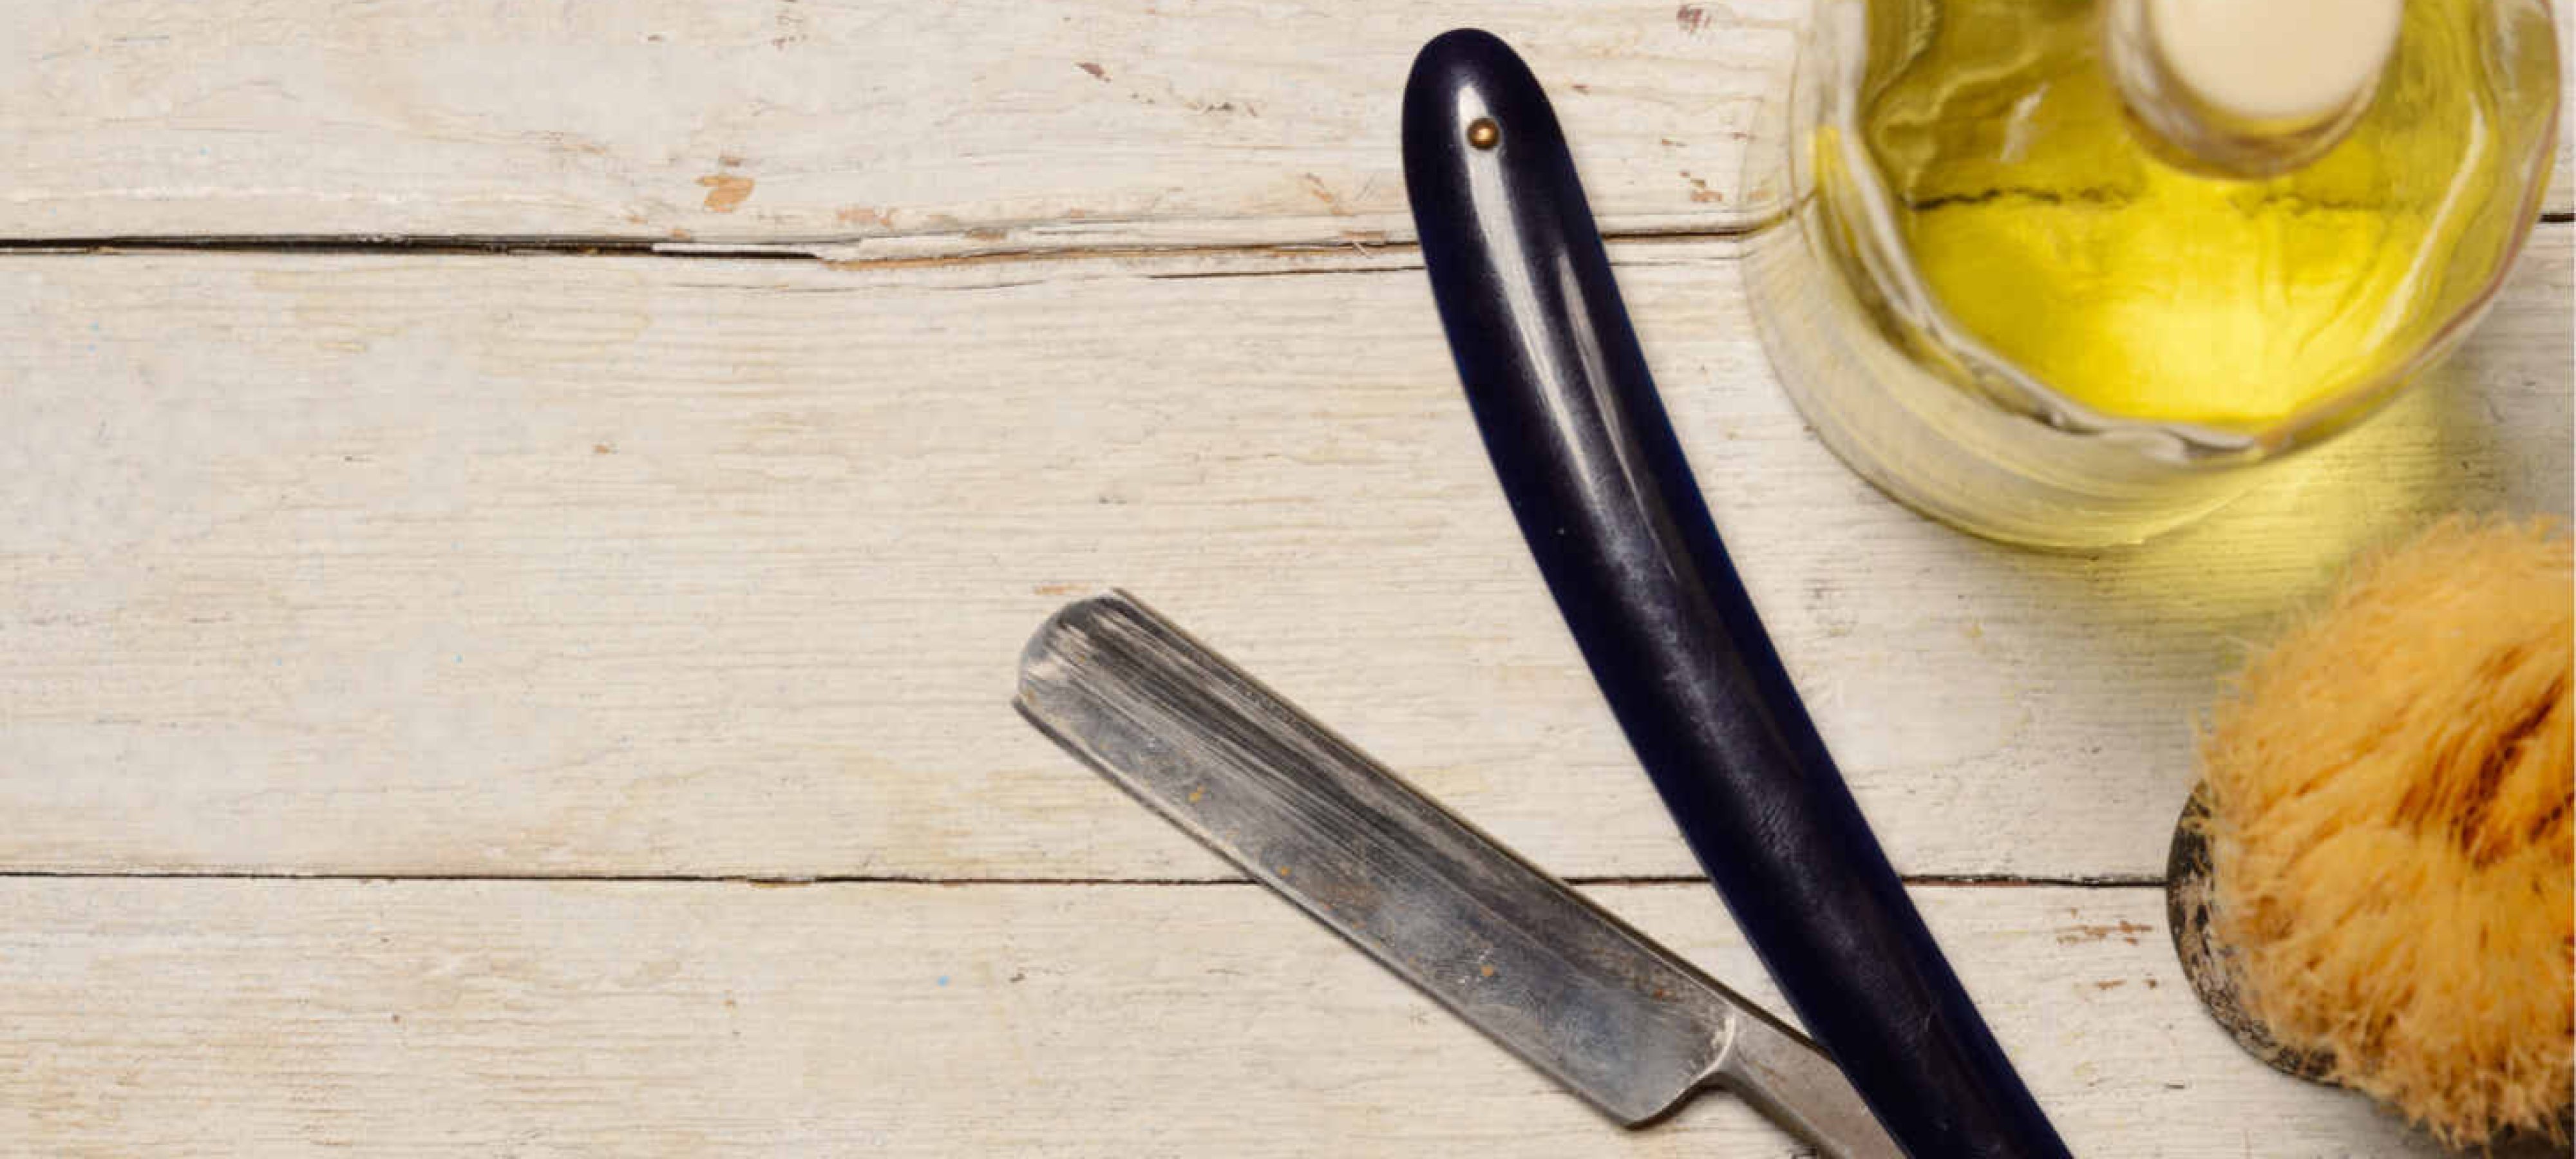 PuGez Knife Oil Rust Eraser Kit, Extra Large Rust Remover for